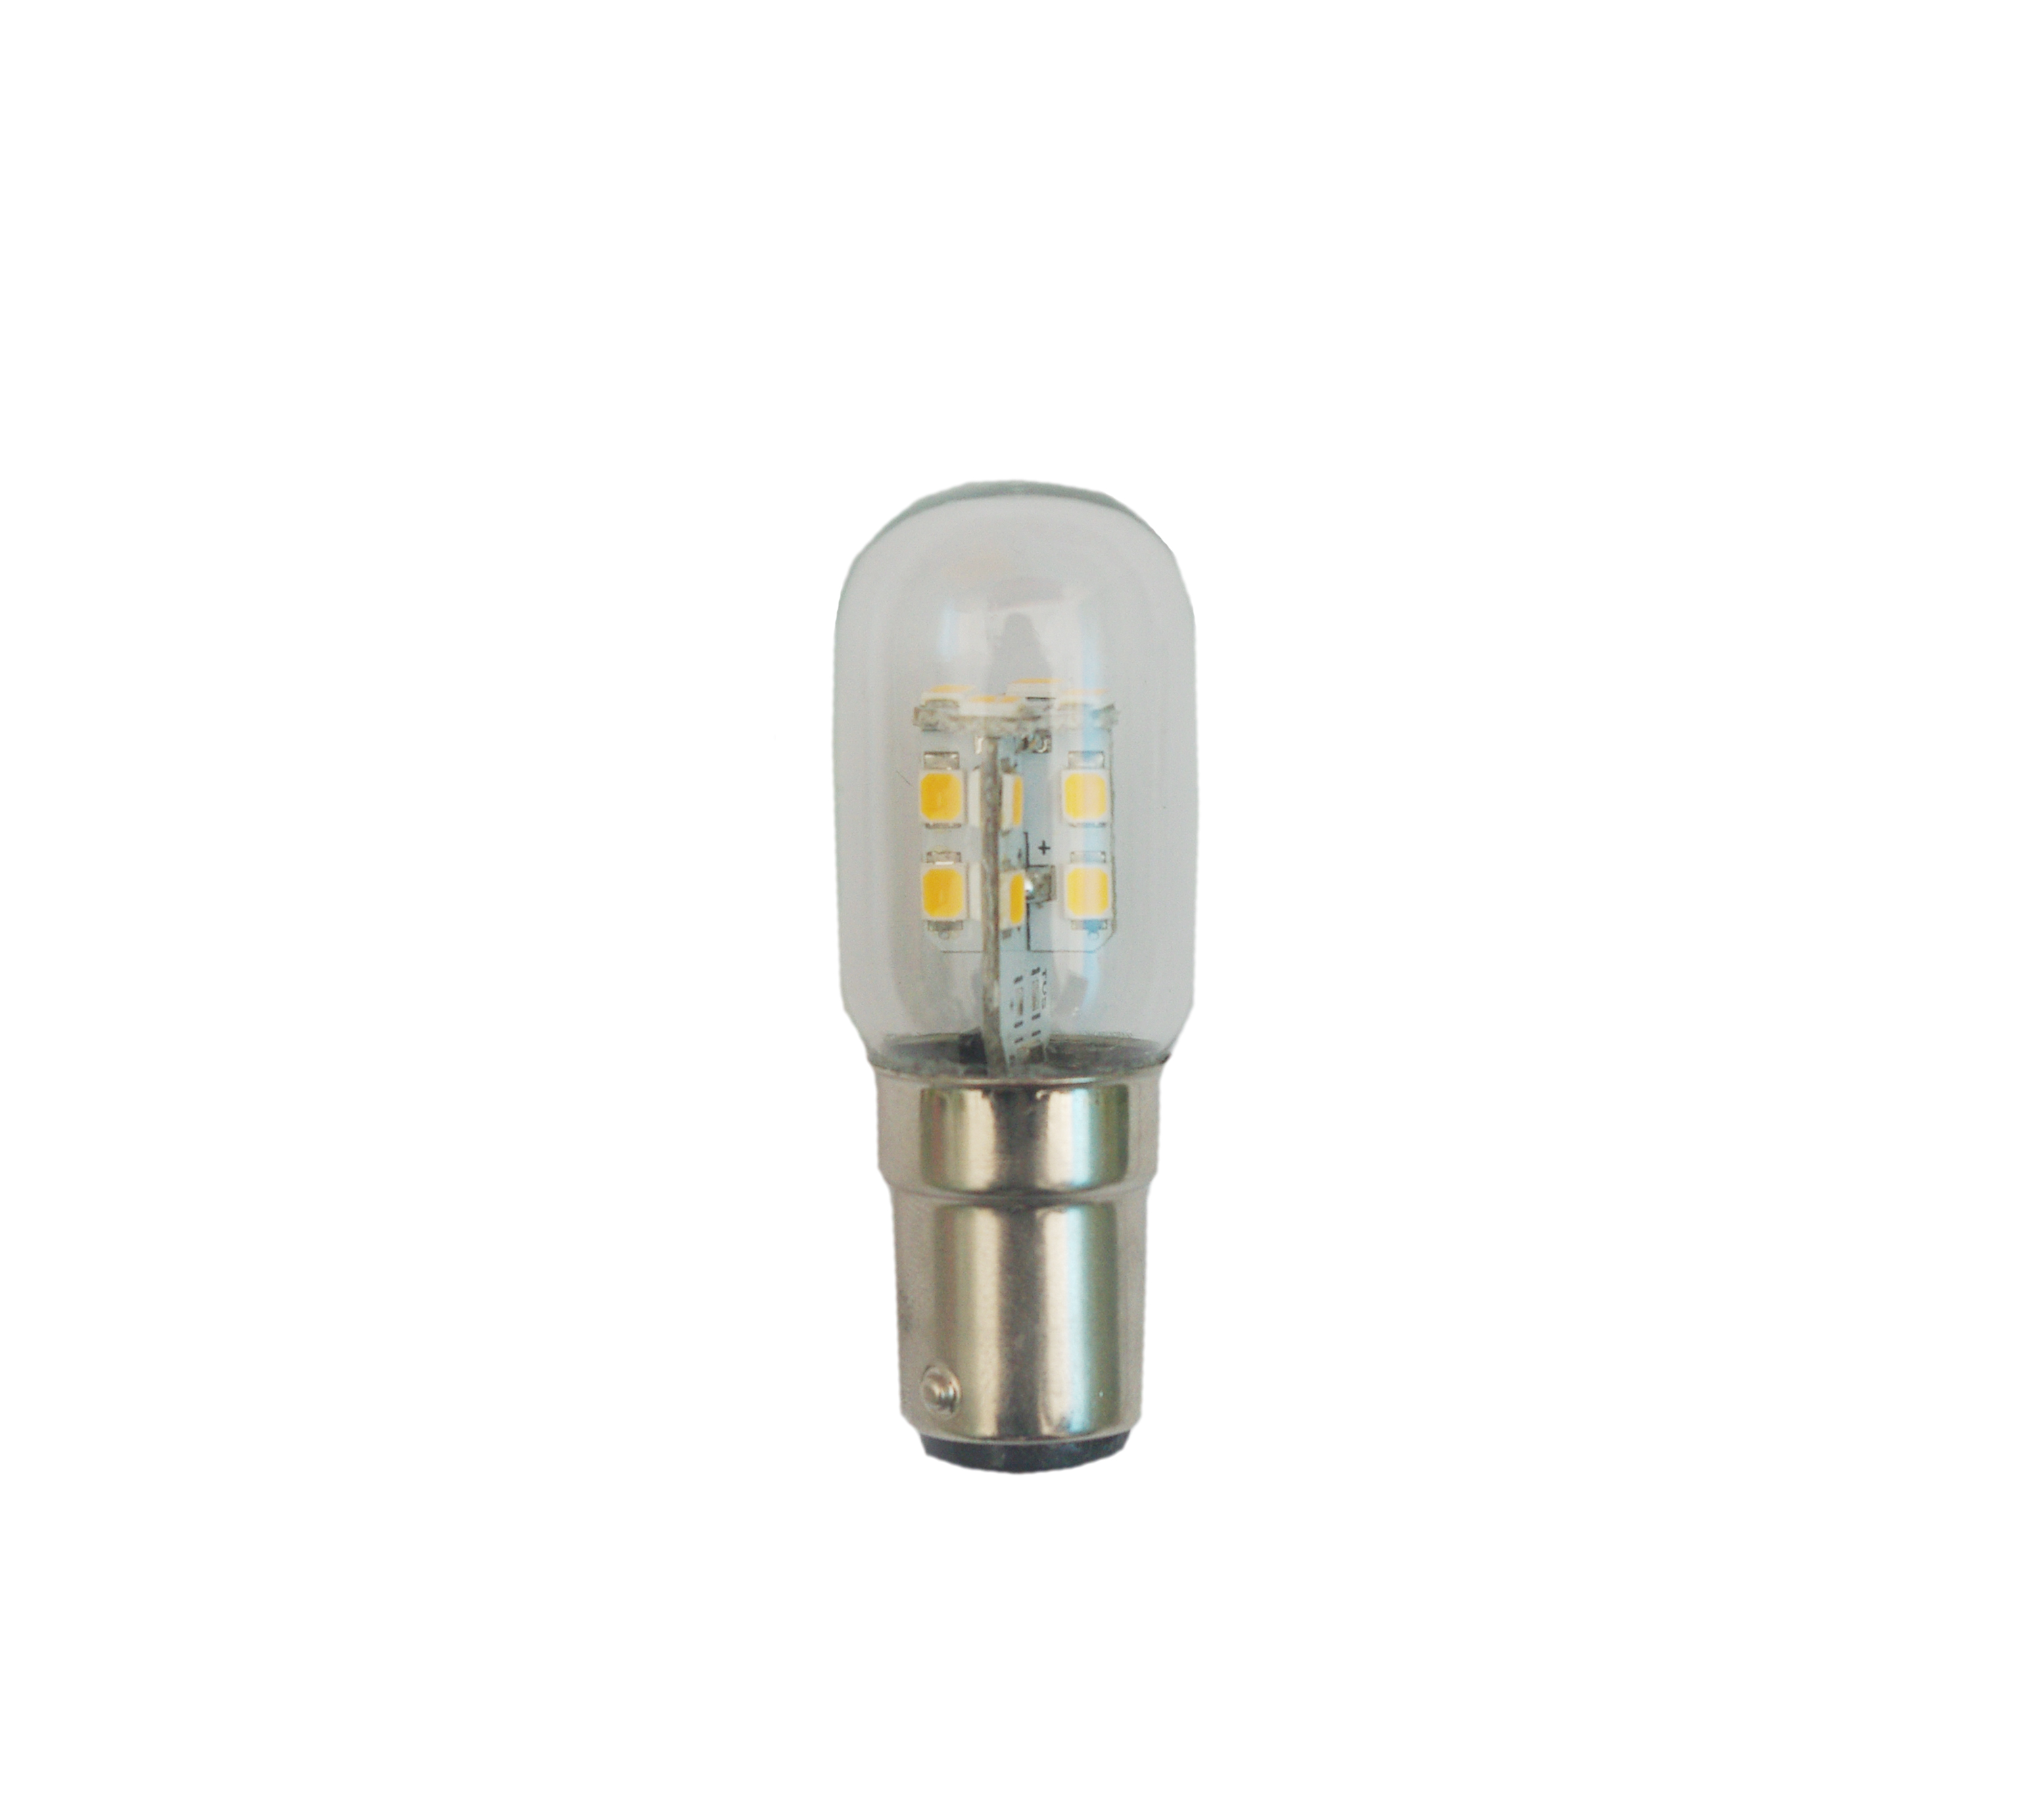 LED Frigidaire refrigerator light bulb